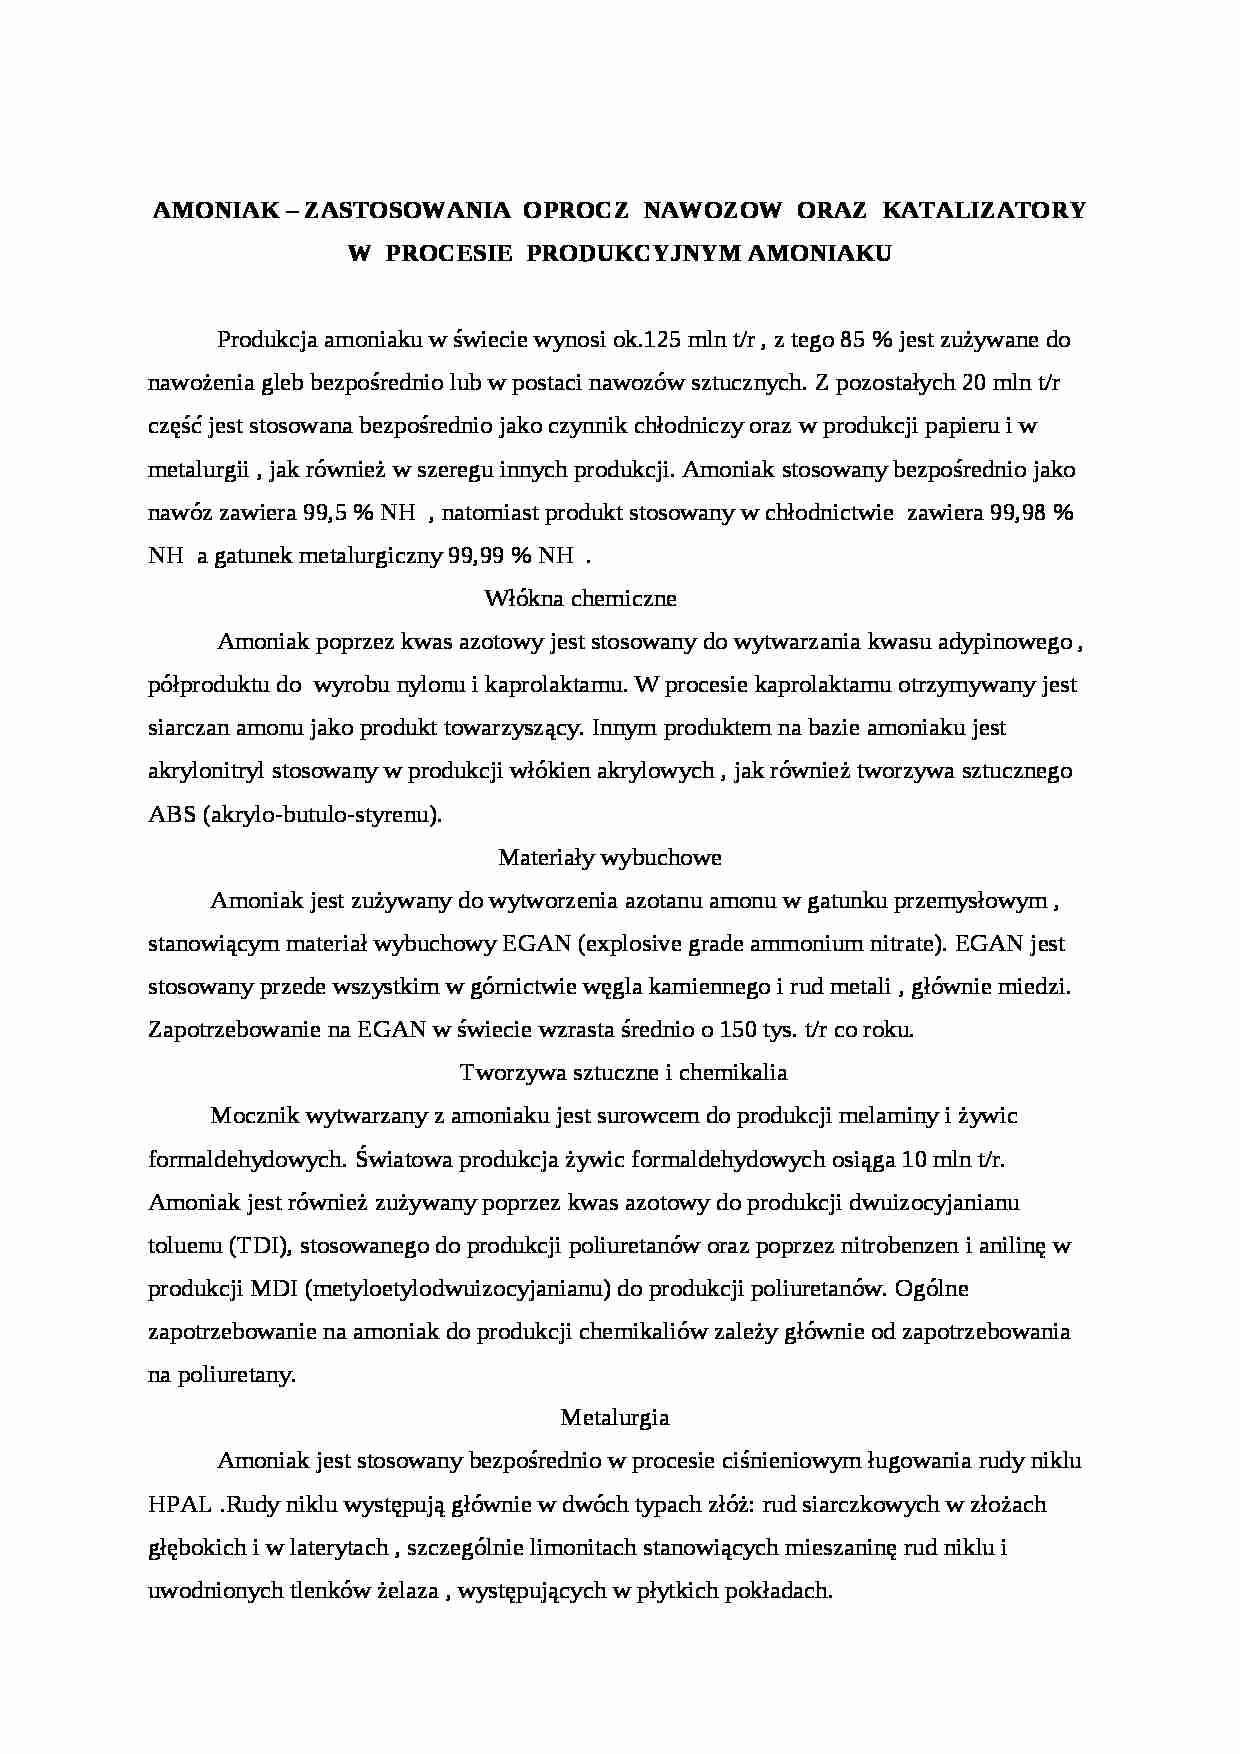 Zastosowanie amoniaku - referat - strona 1